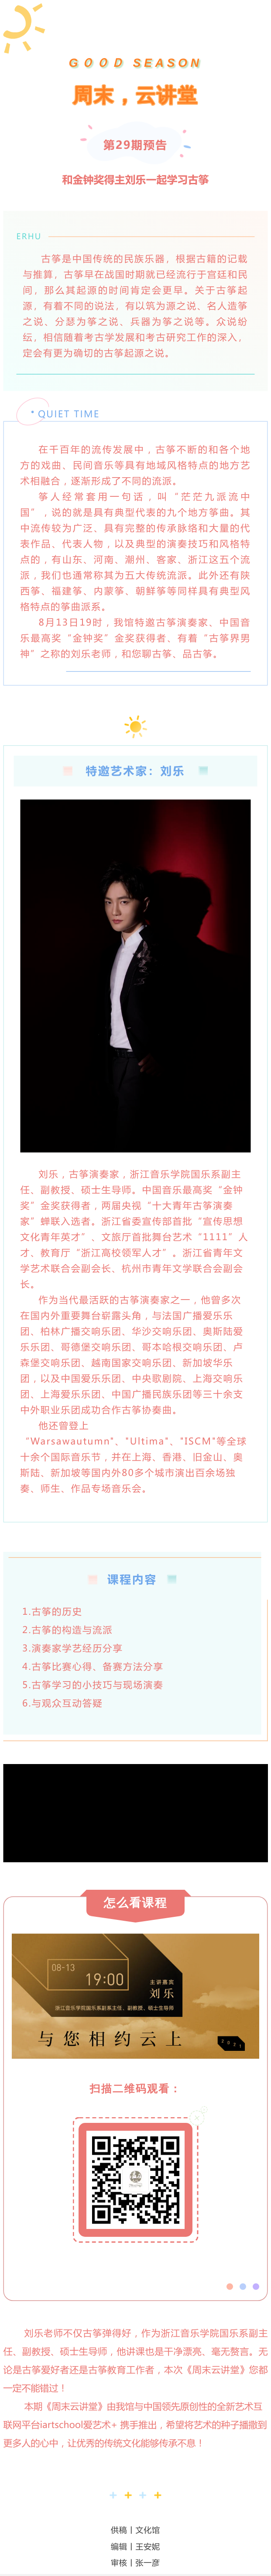 第29期预告_和金钟奖得主刘乐一起学习古筝.png